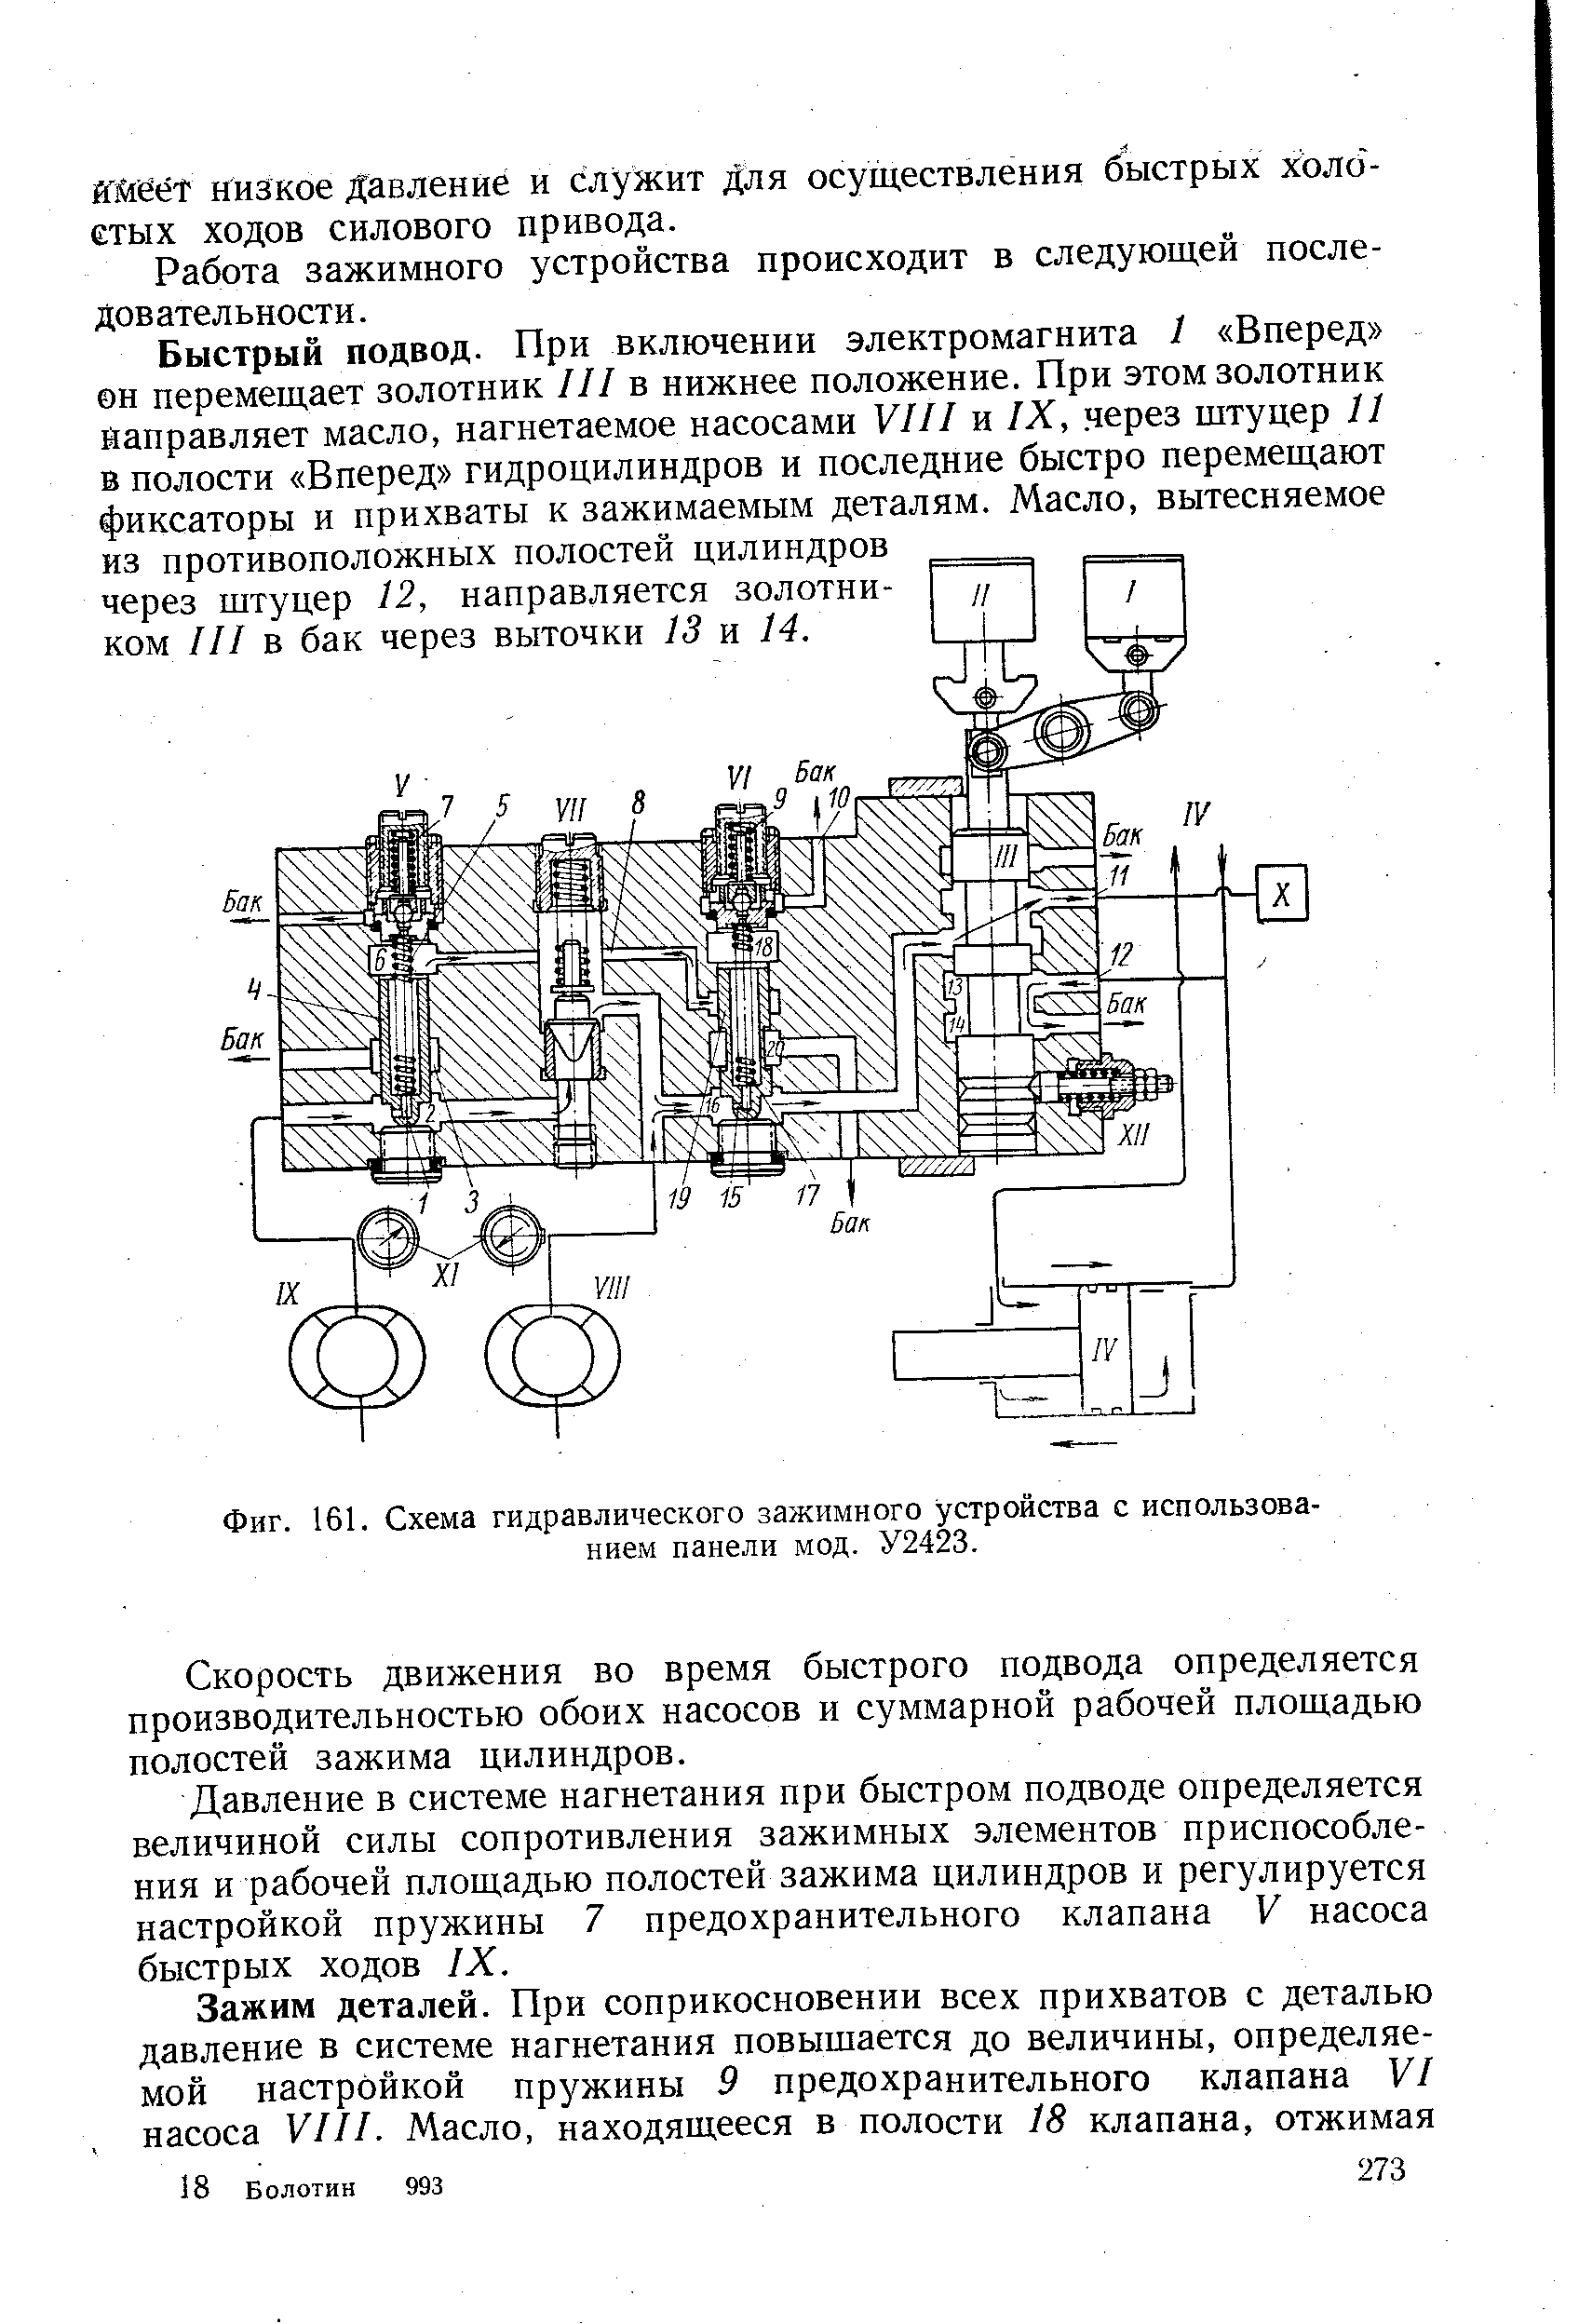 Фиг. 161. Схема гидравлического зажимного устройства с использованием панели мод. У2423.
